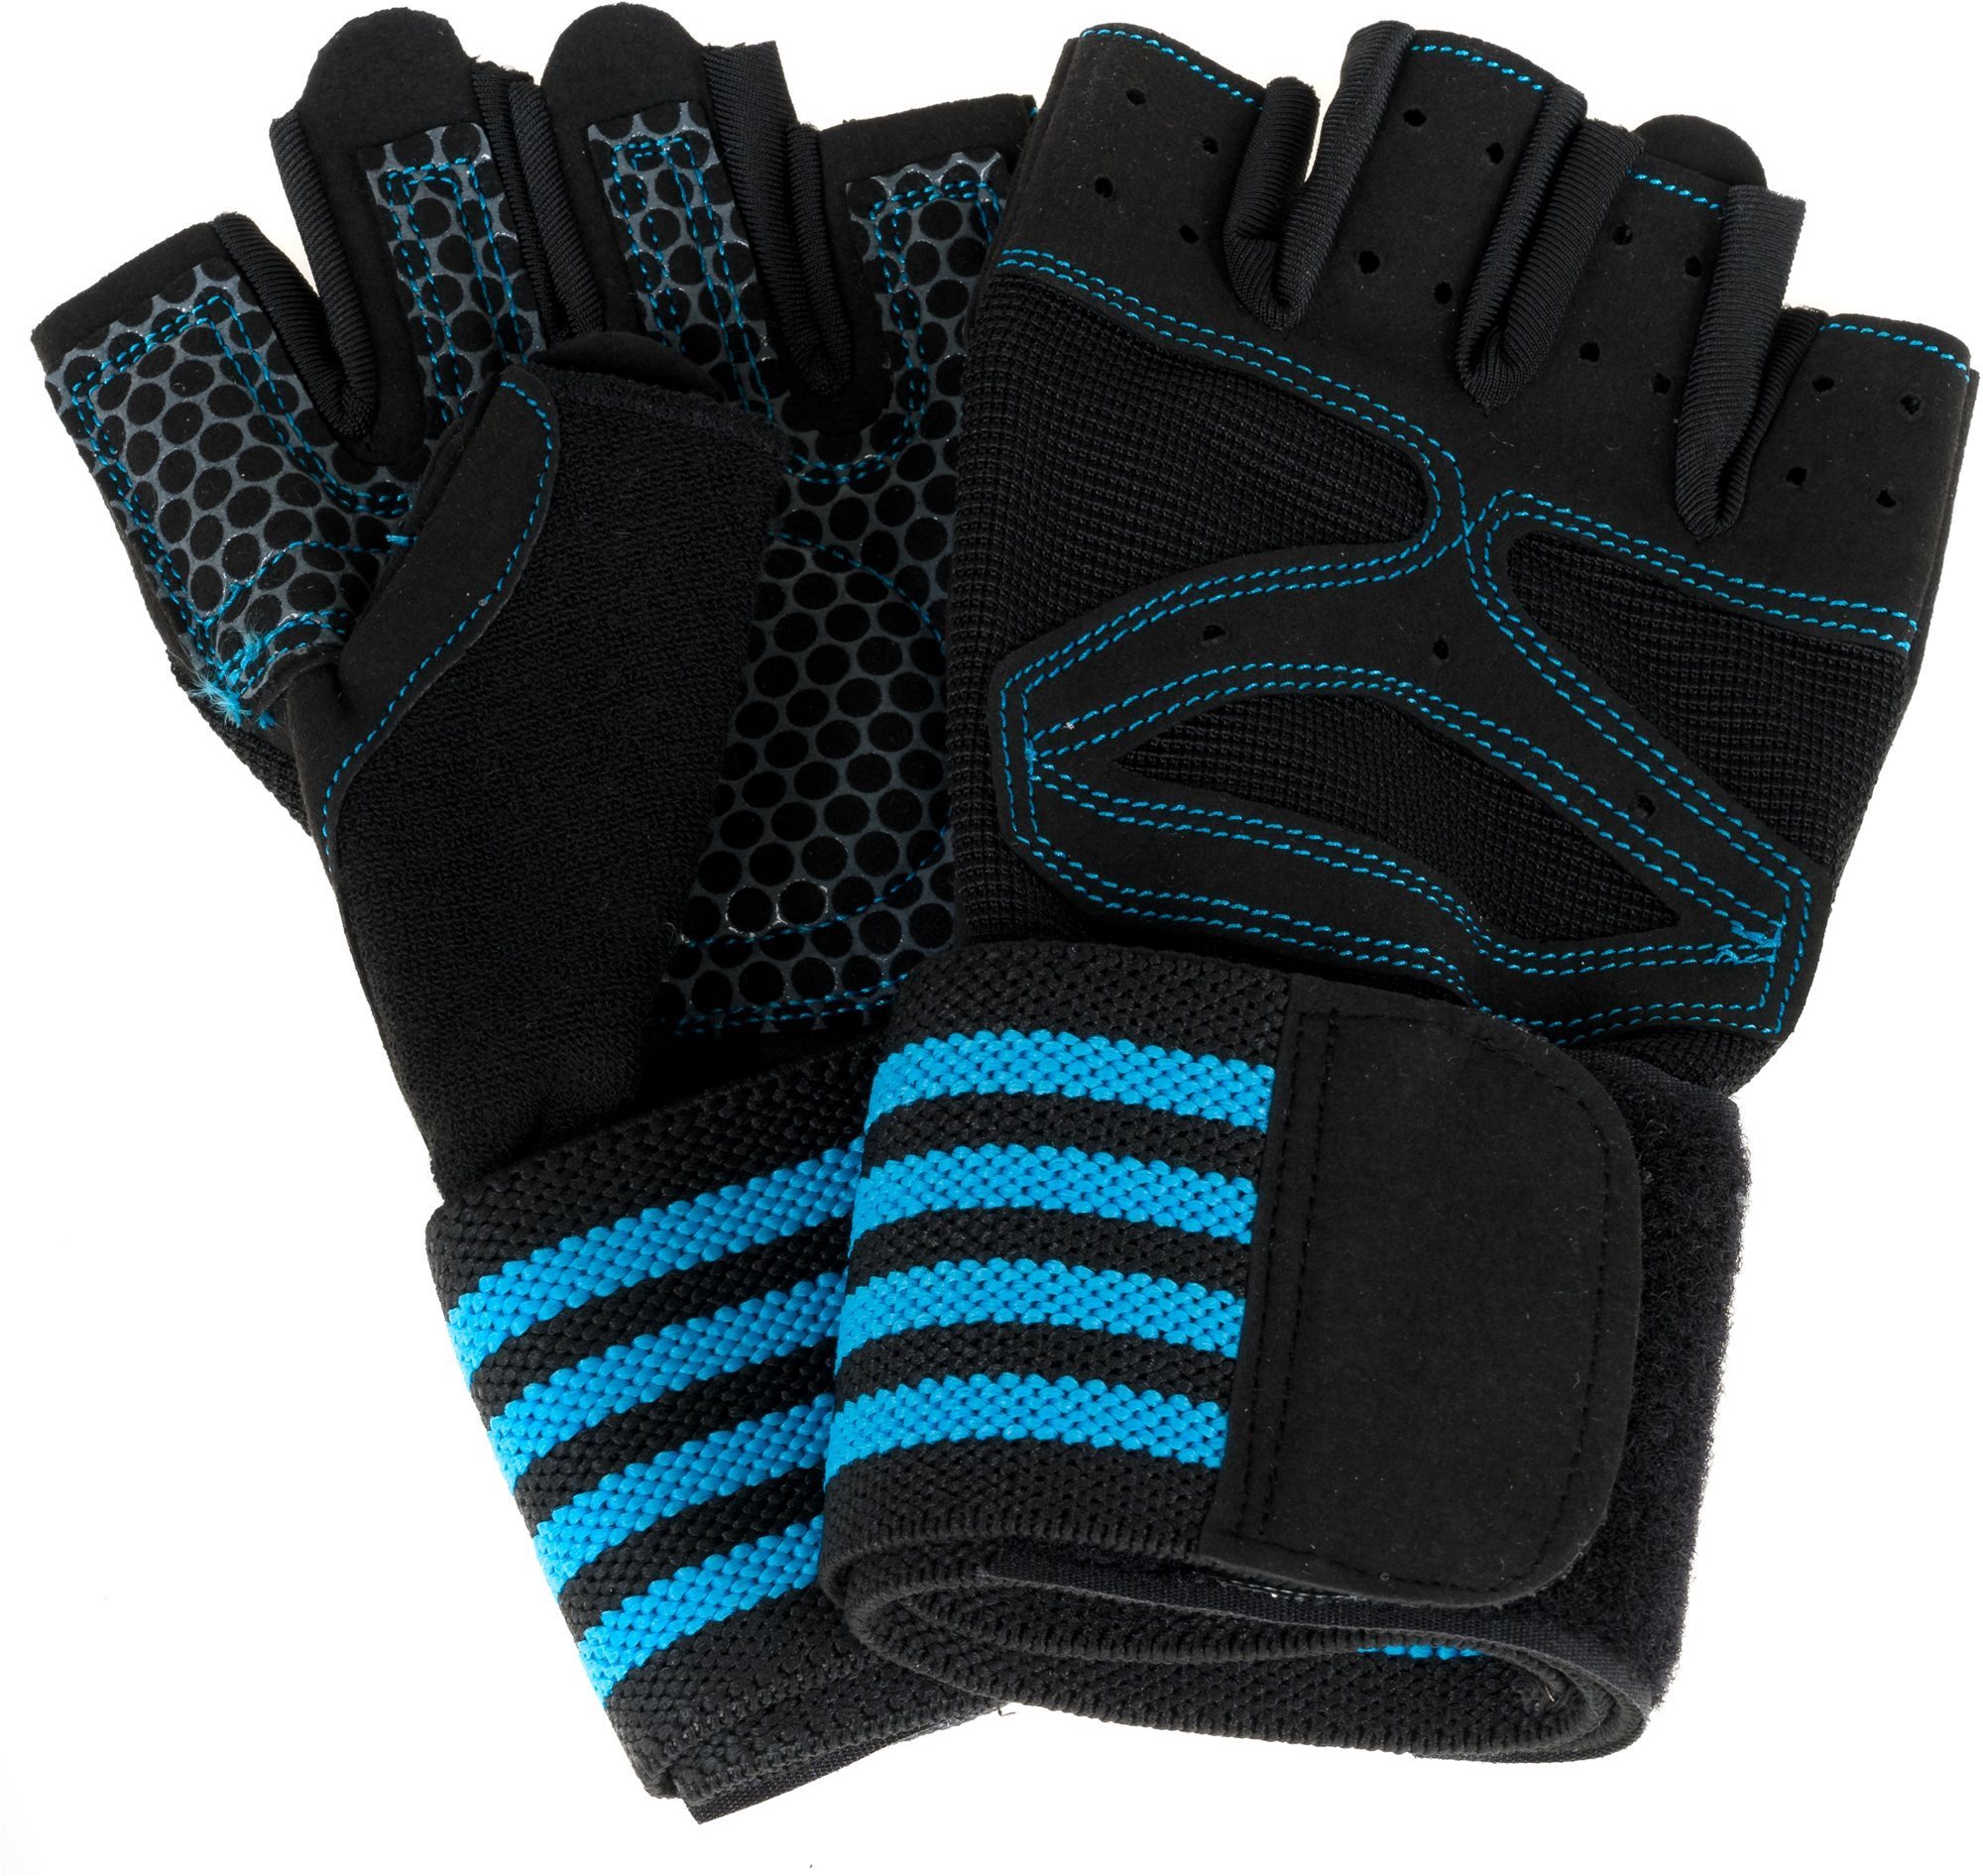 Stormred Training Gloves L